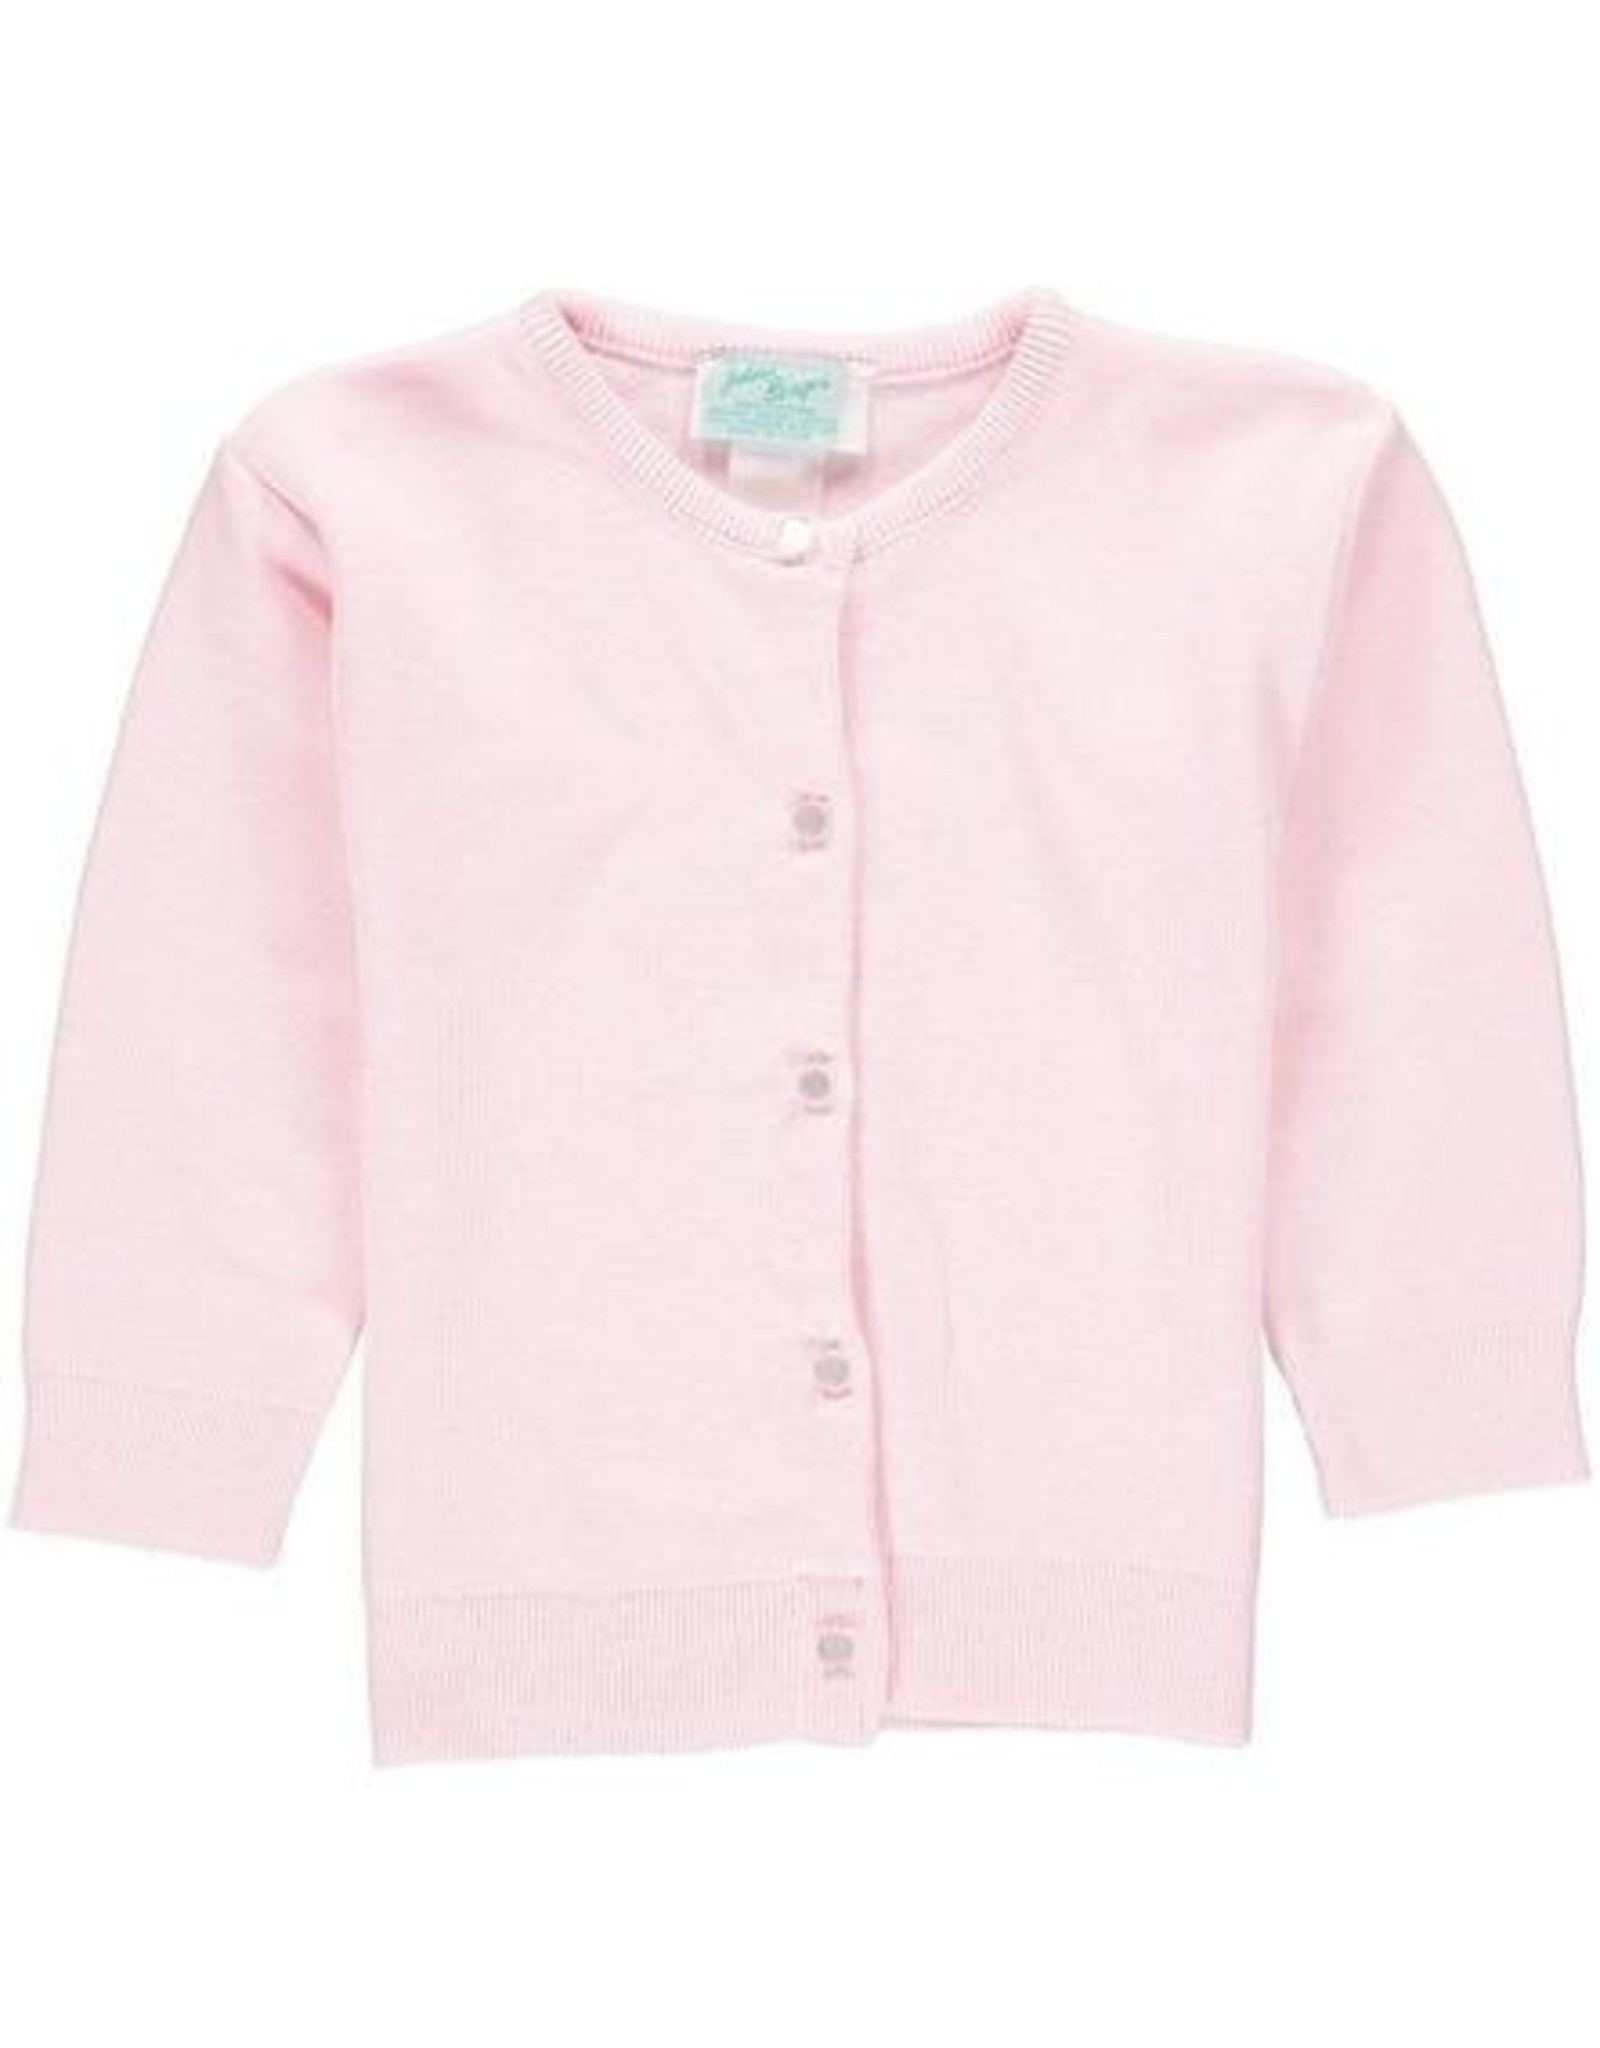 443 Girl Cardigan Sweater Pink